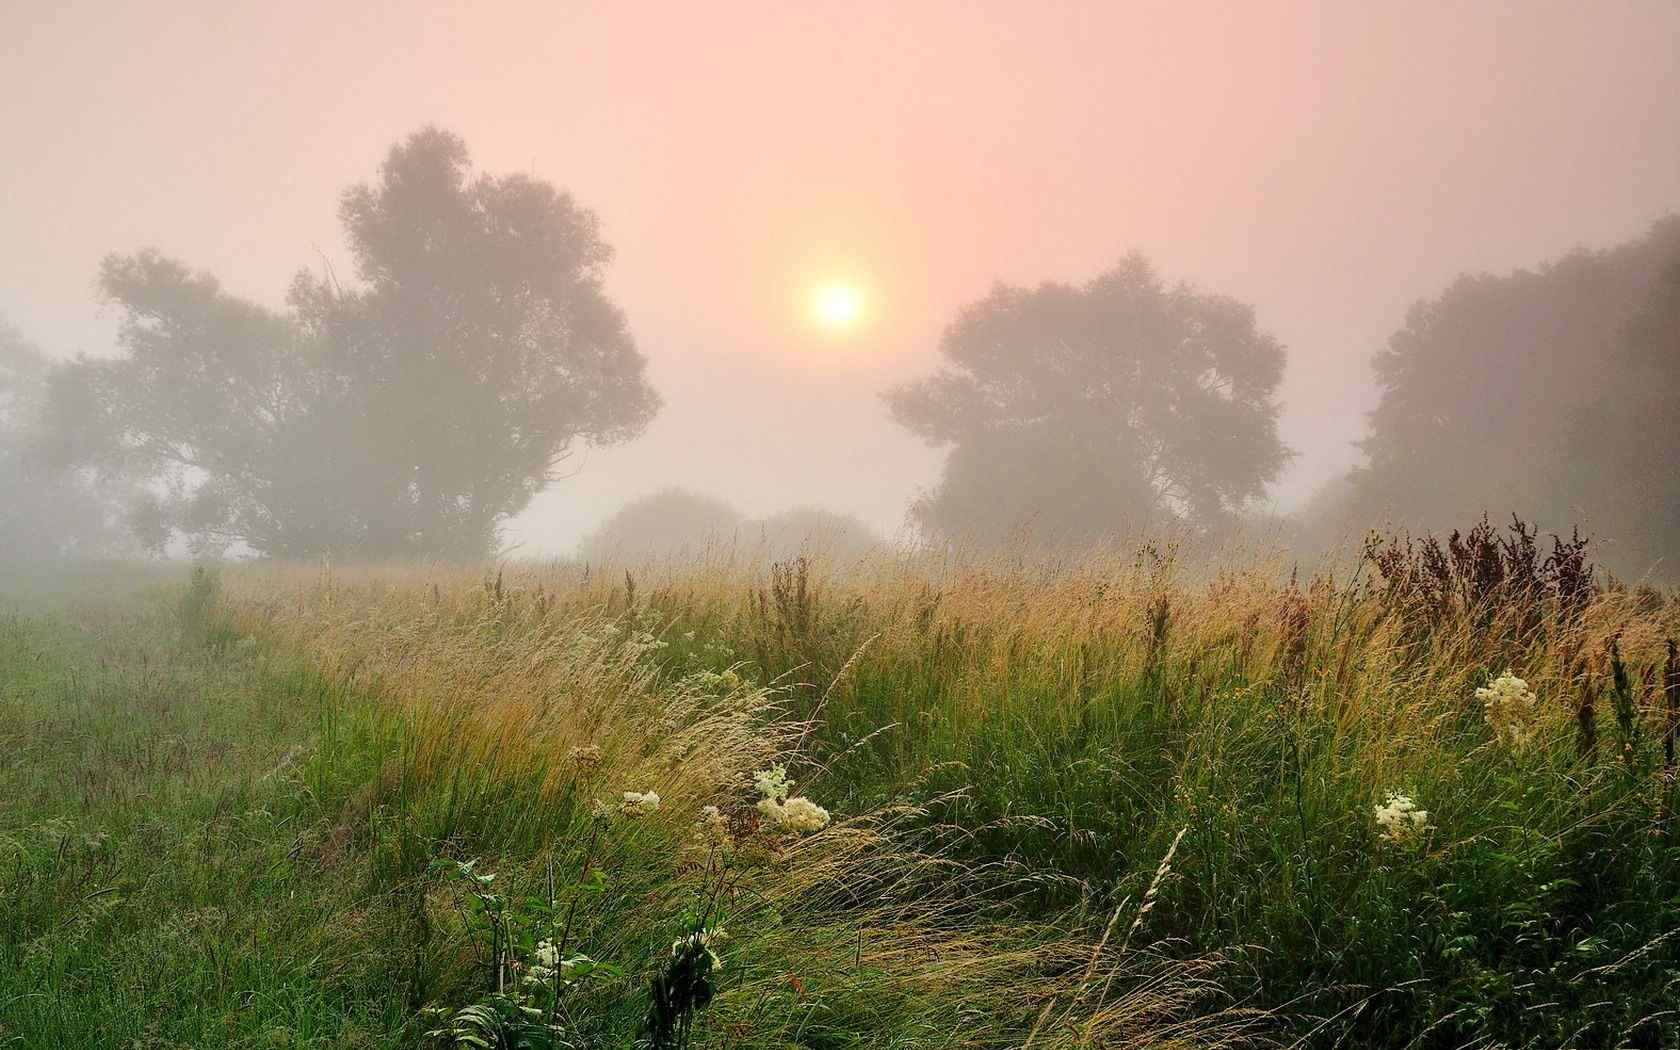 自然清晨的雾漂亮风景win7高清电脑桌面壁纸 第一辑